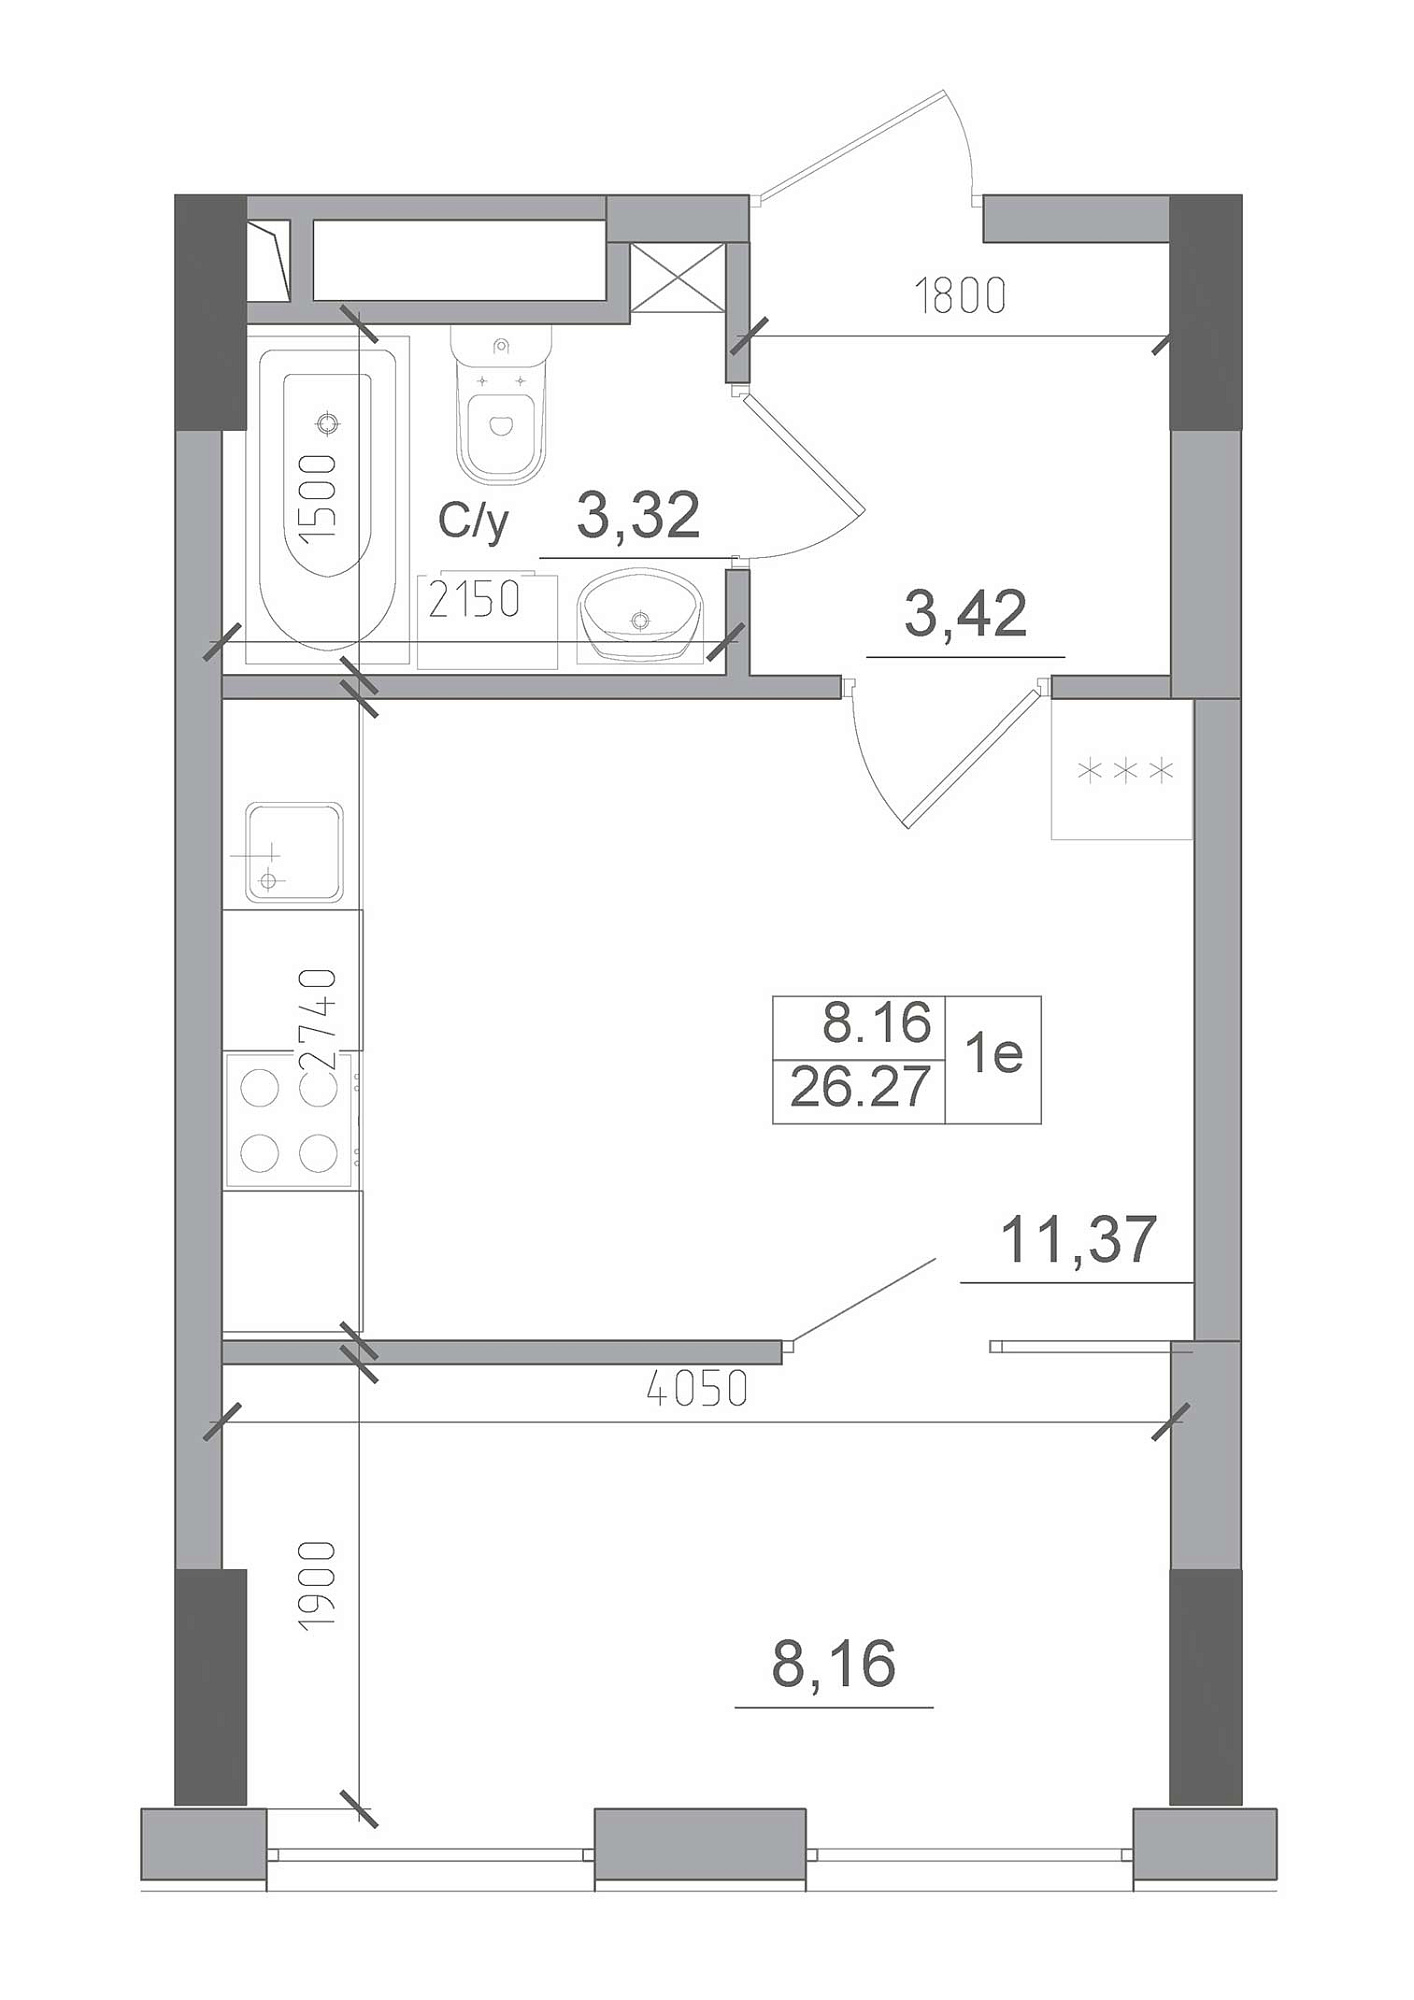 Планировка 1-к квартира площей 26.27м2, AB-22-04/00009.